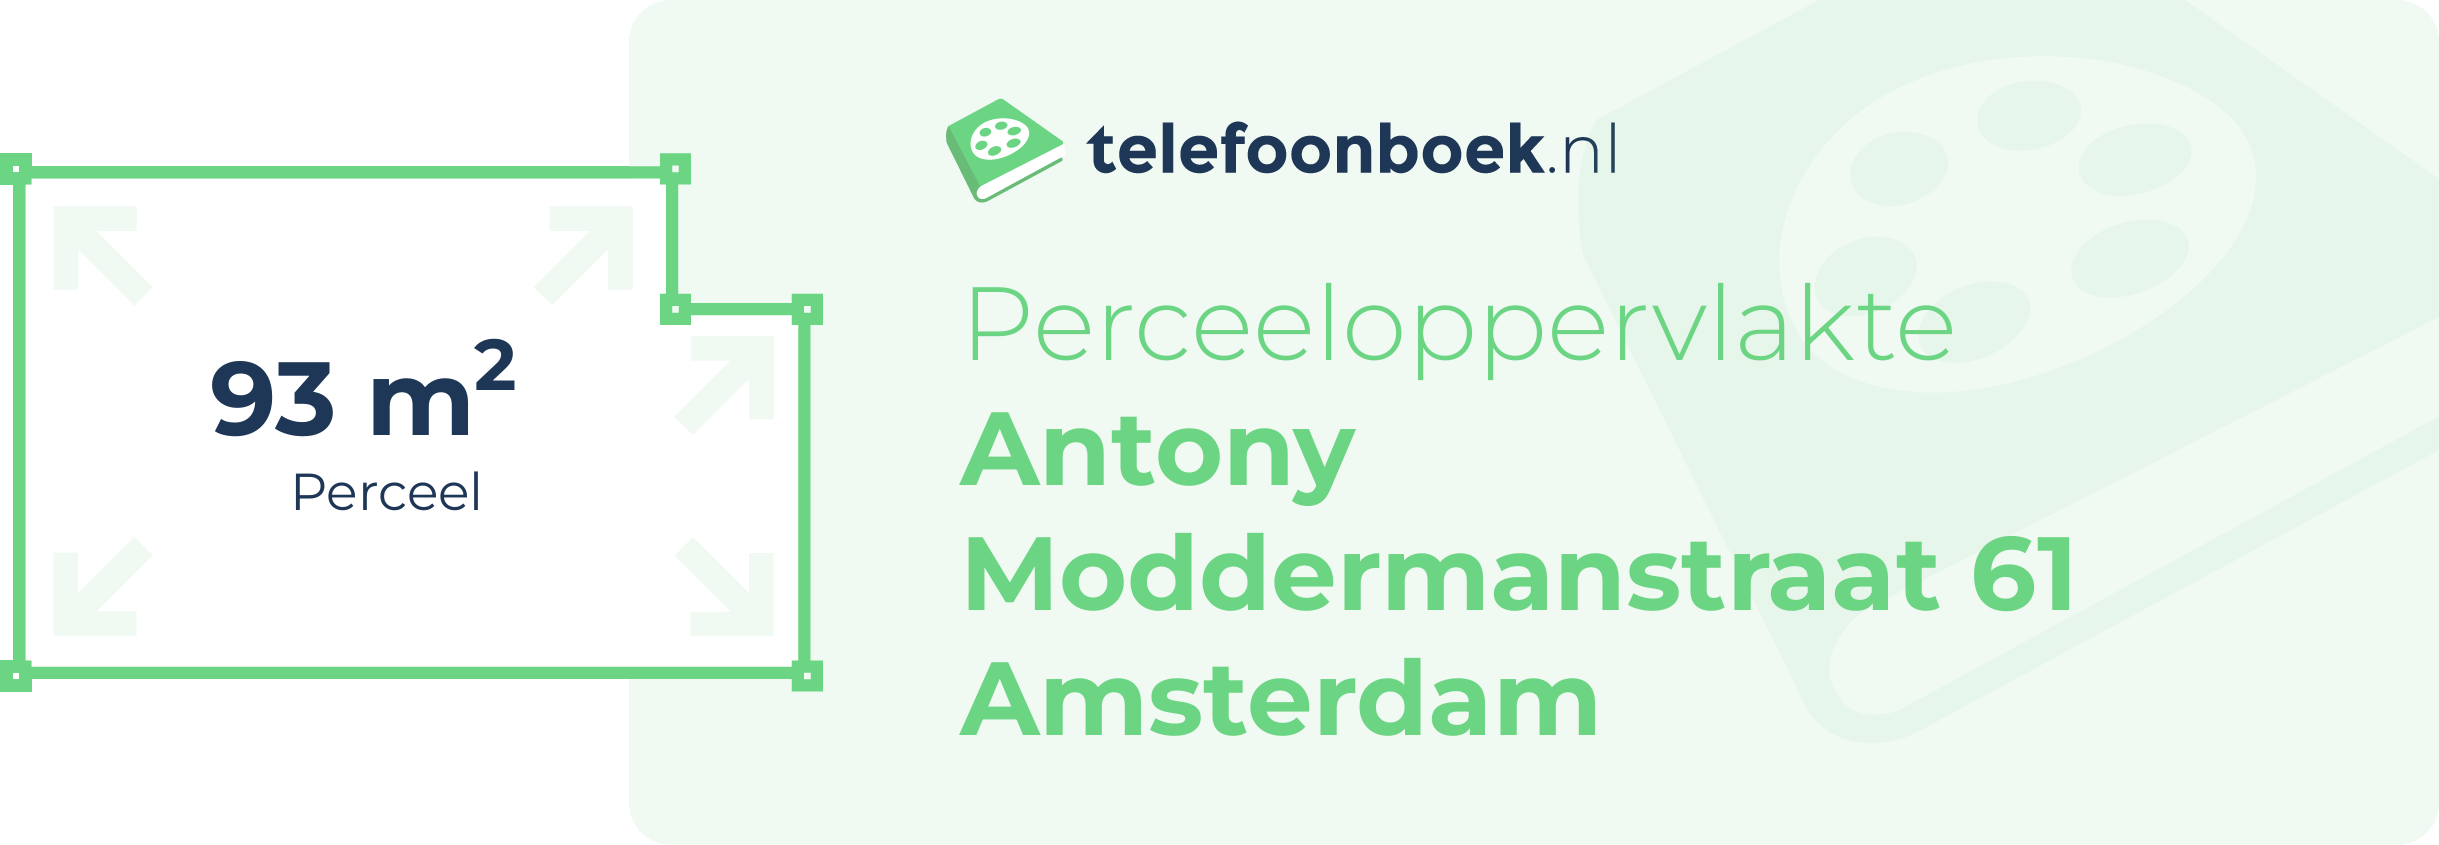 Perceeloppervlakte Antony Moddermanstraat 61 Amsterdam